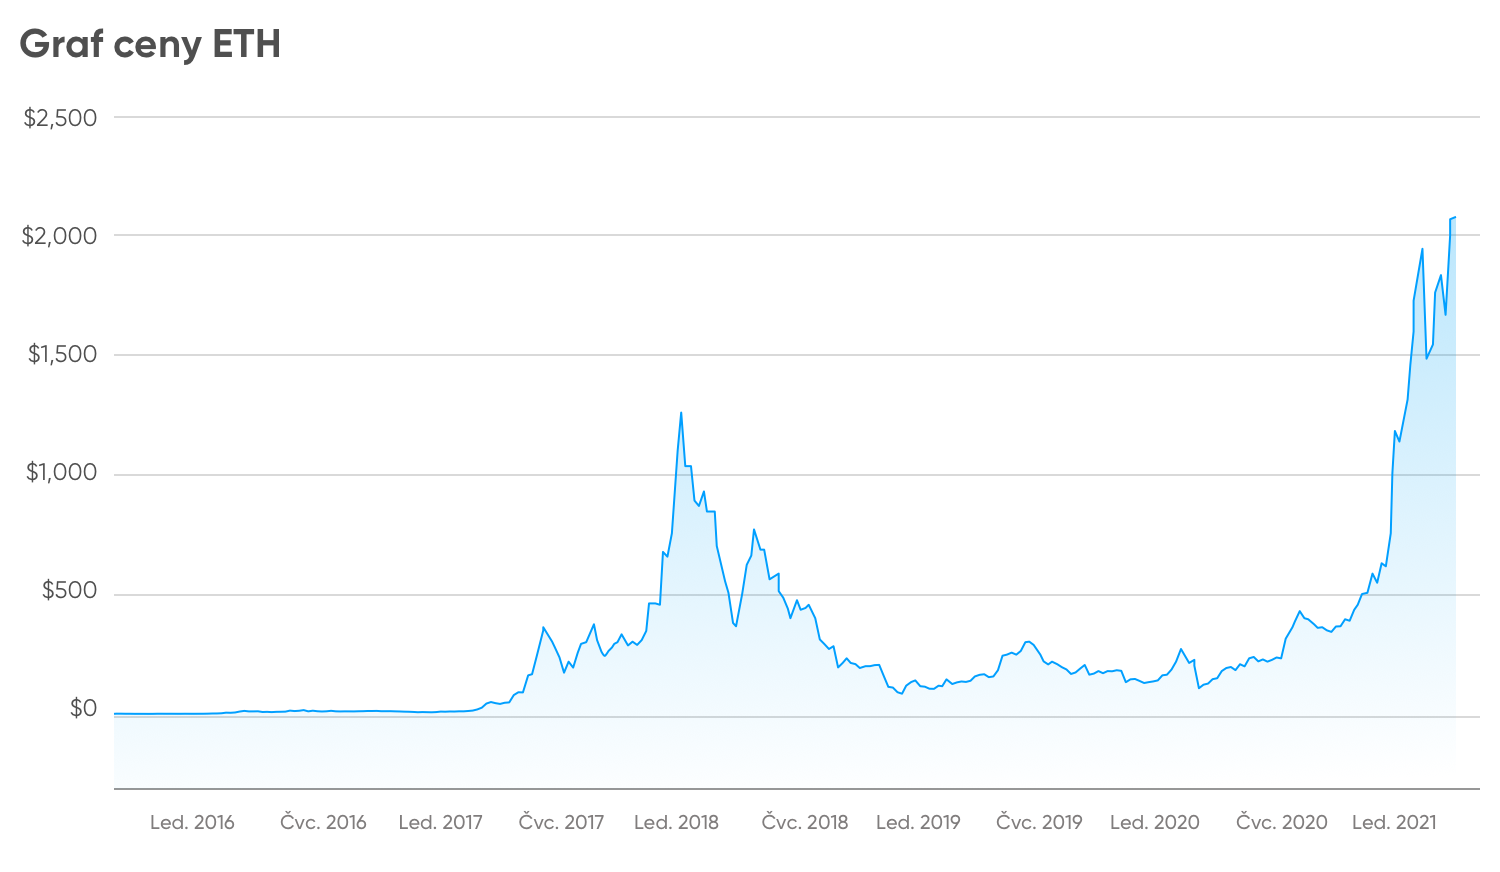 Prekybos bitkoinų rinka - astroportal.lt